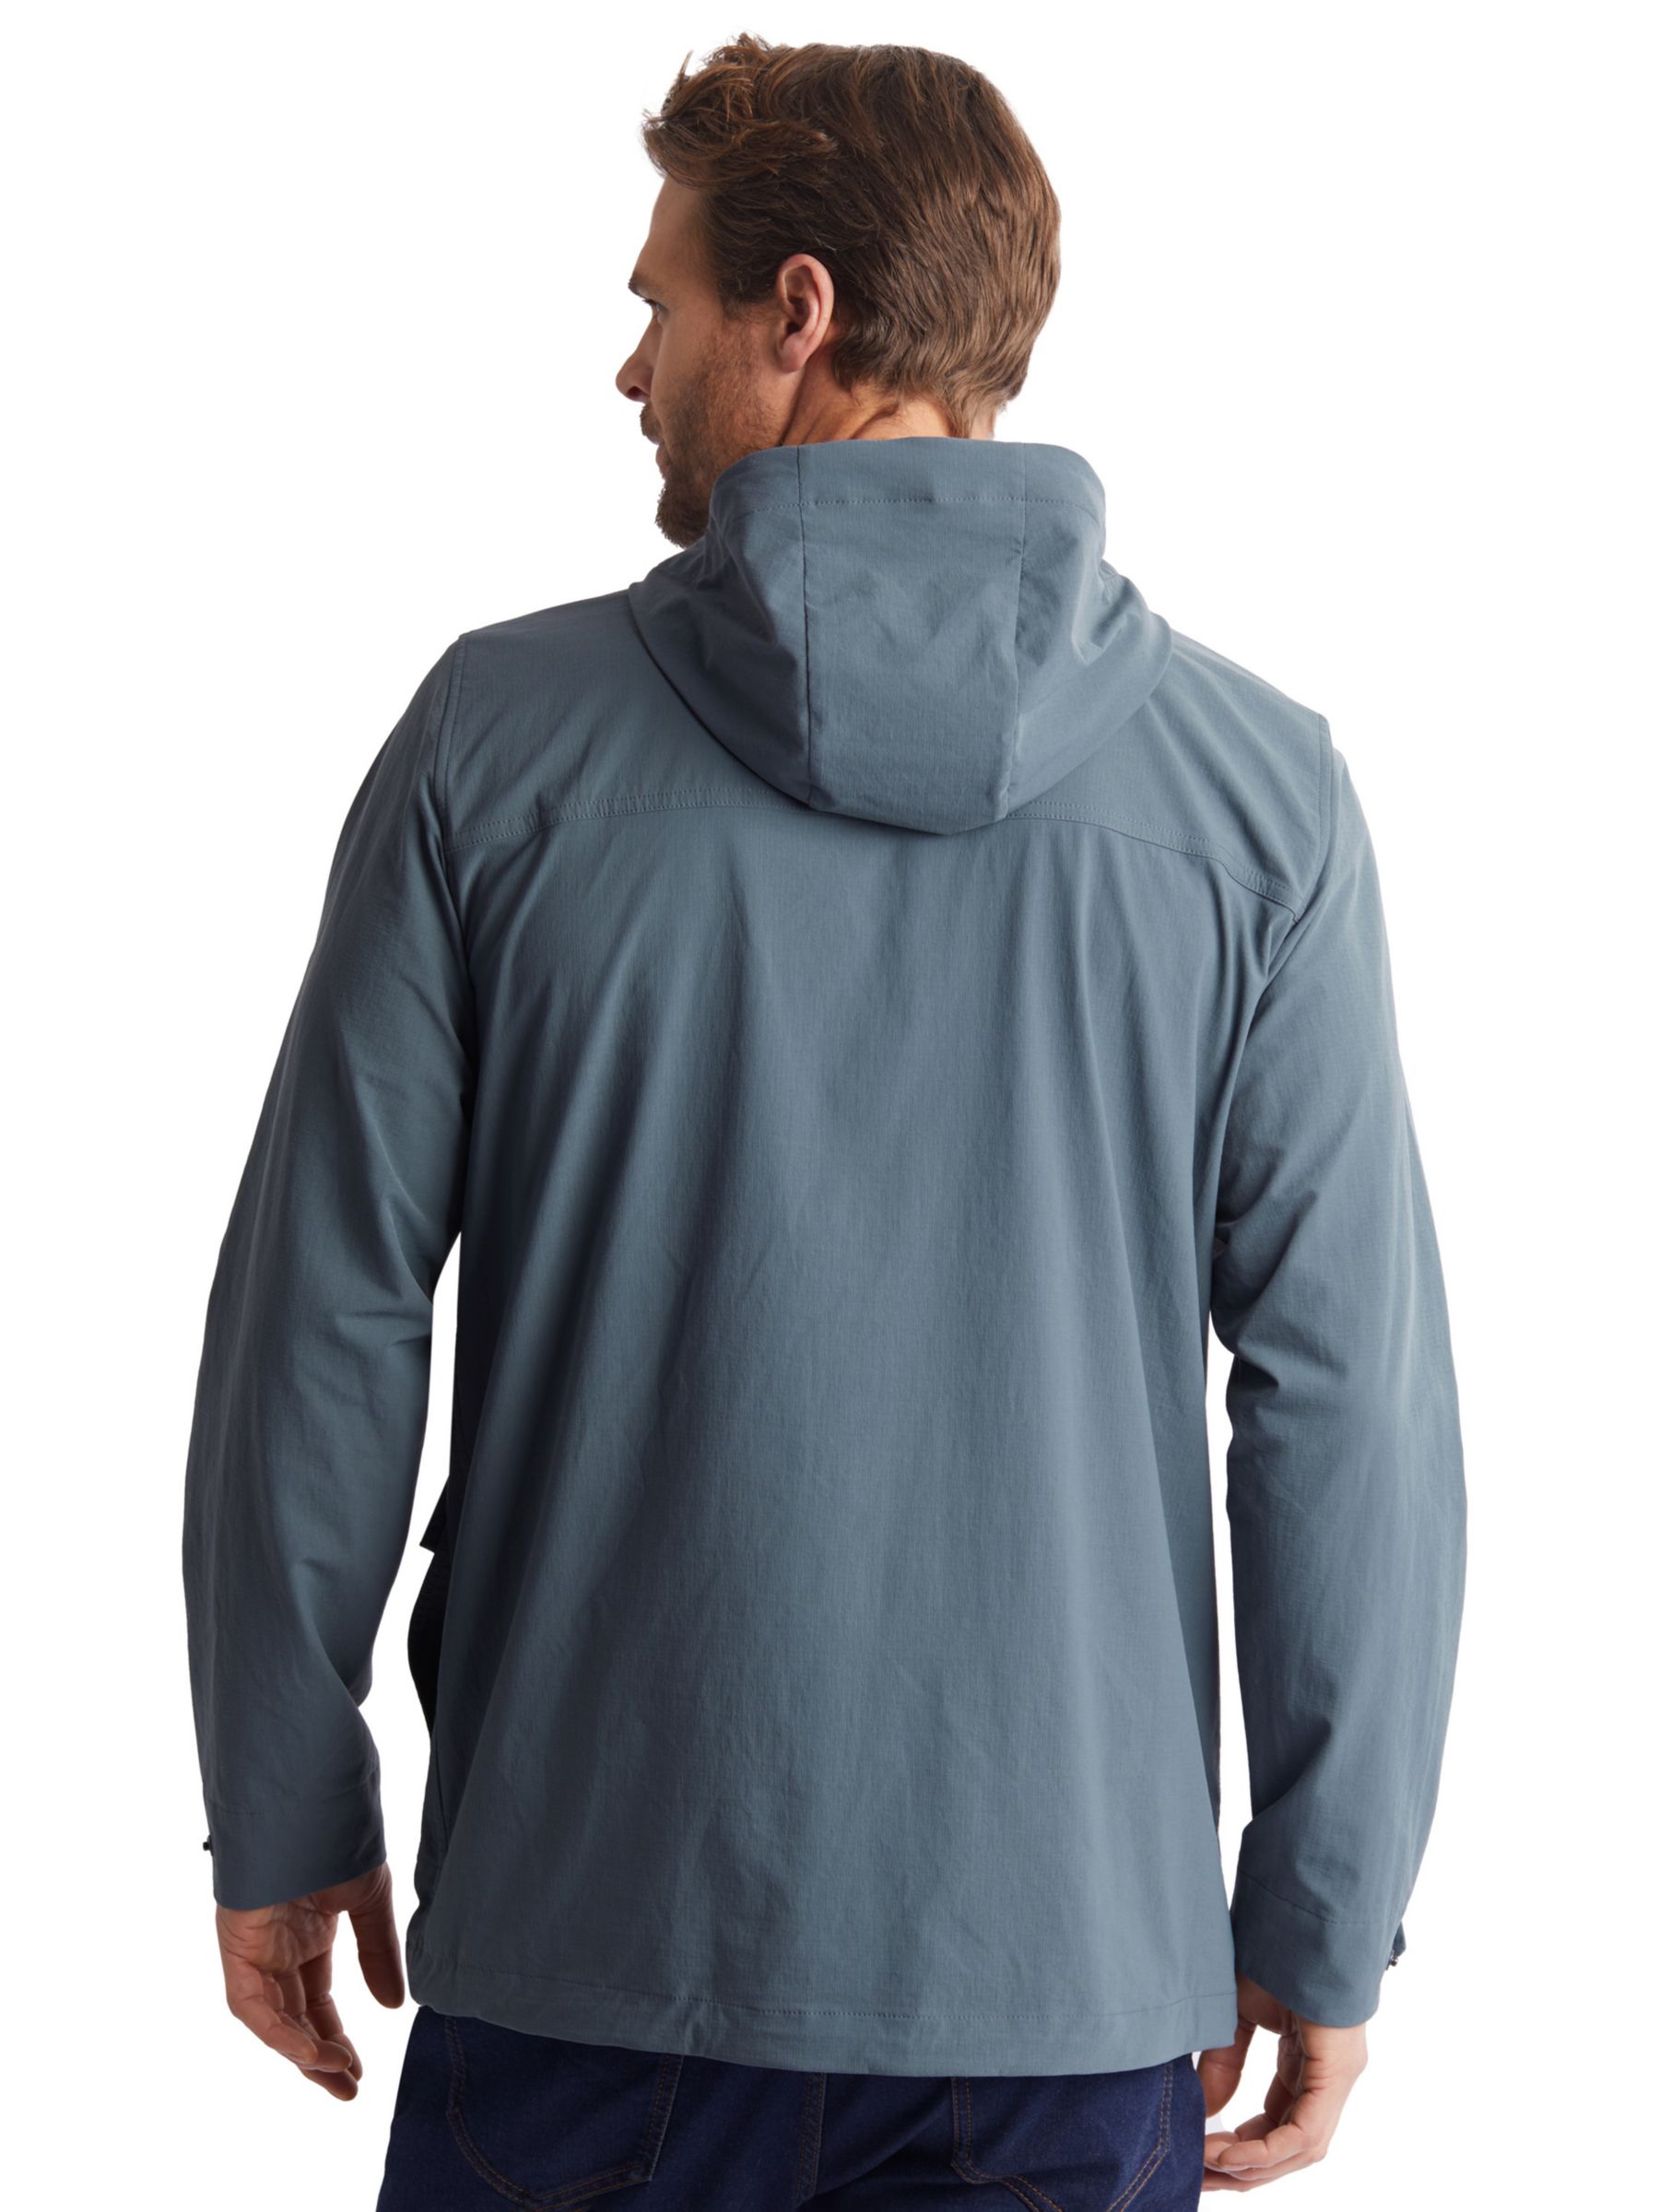 Rohan Valley Lightweight Water Repellent Jacket, Slate Grey, S